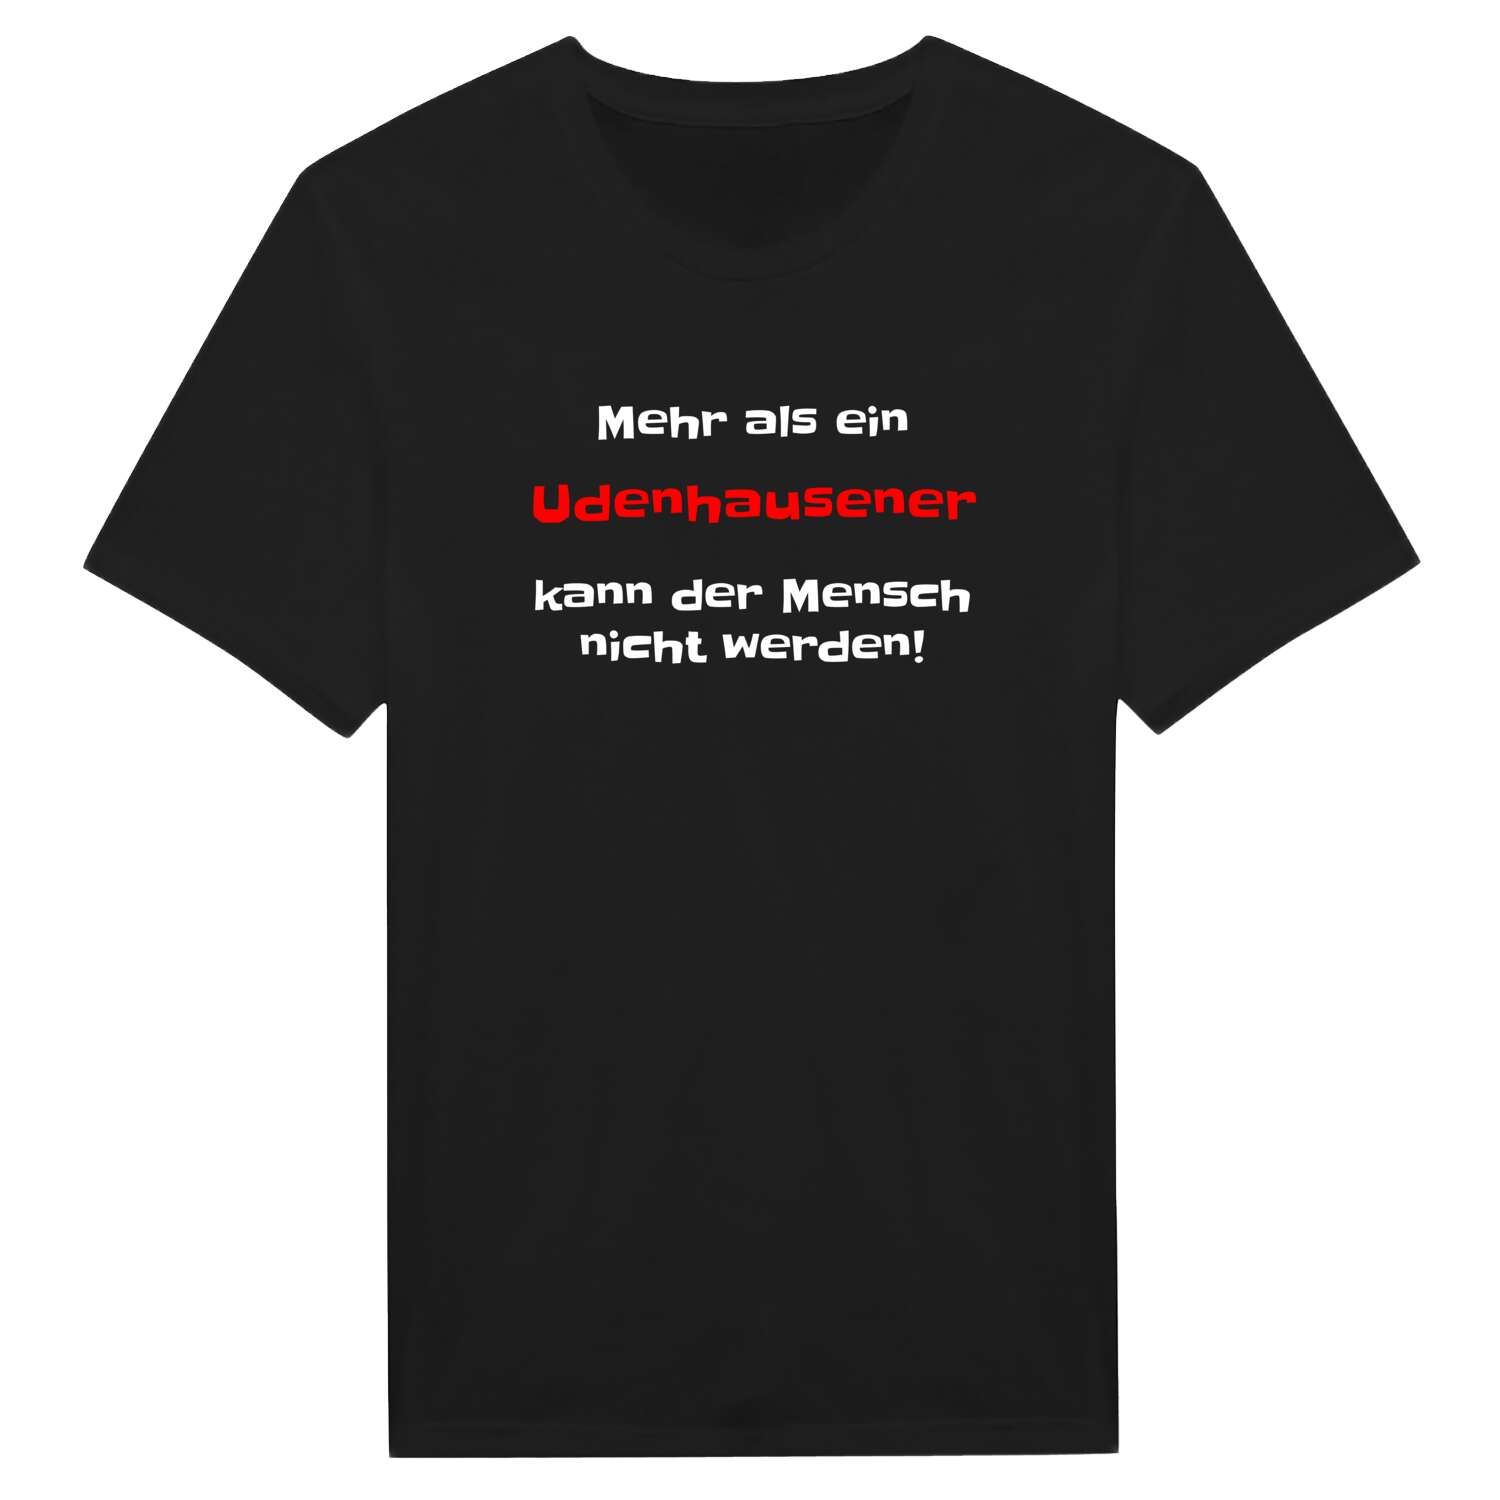 Udenhausen T-Shirt »Mehr als ein«